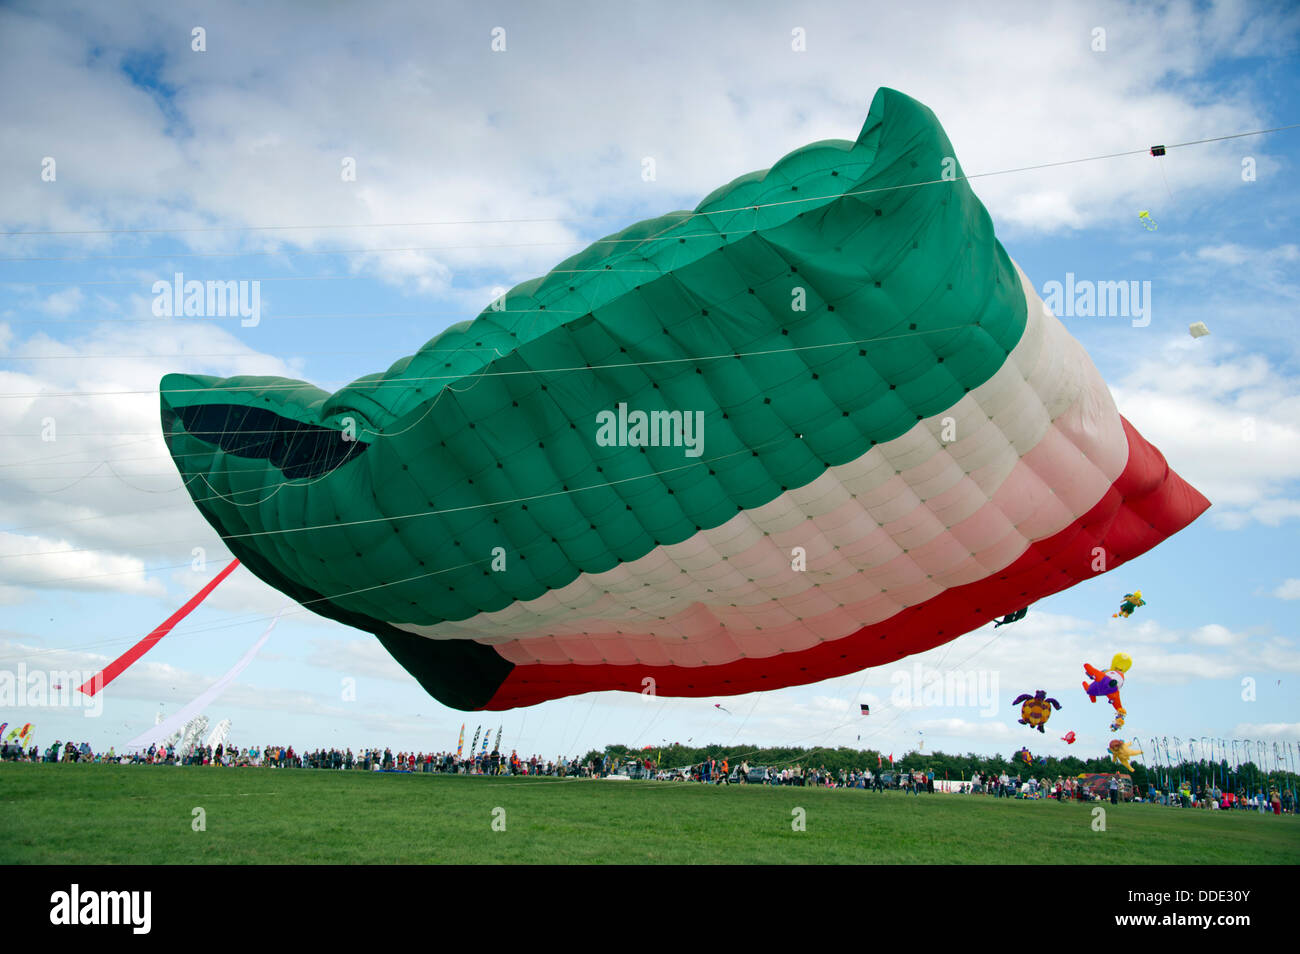 Bristol International Kite Festival, einschließlich des weltweit größten Drachen in Form der kuwaitischen Flagge. Stockfoto